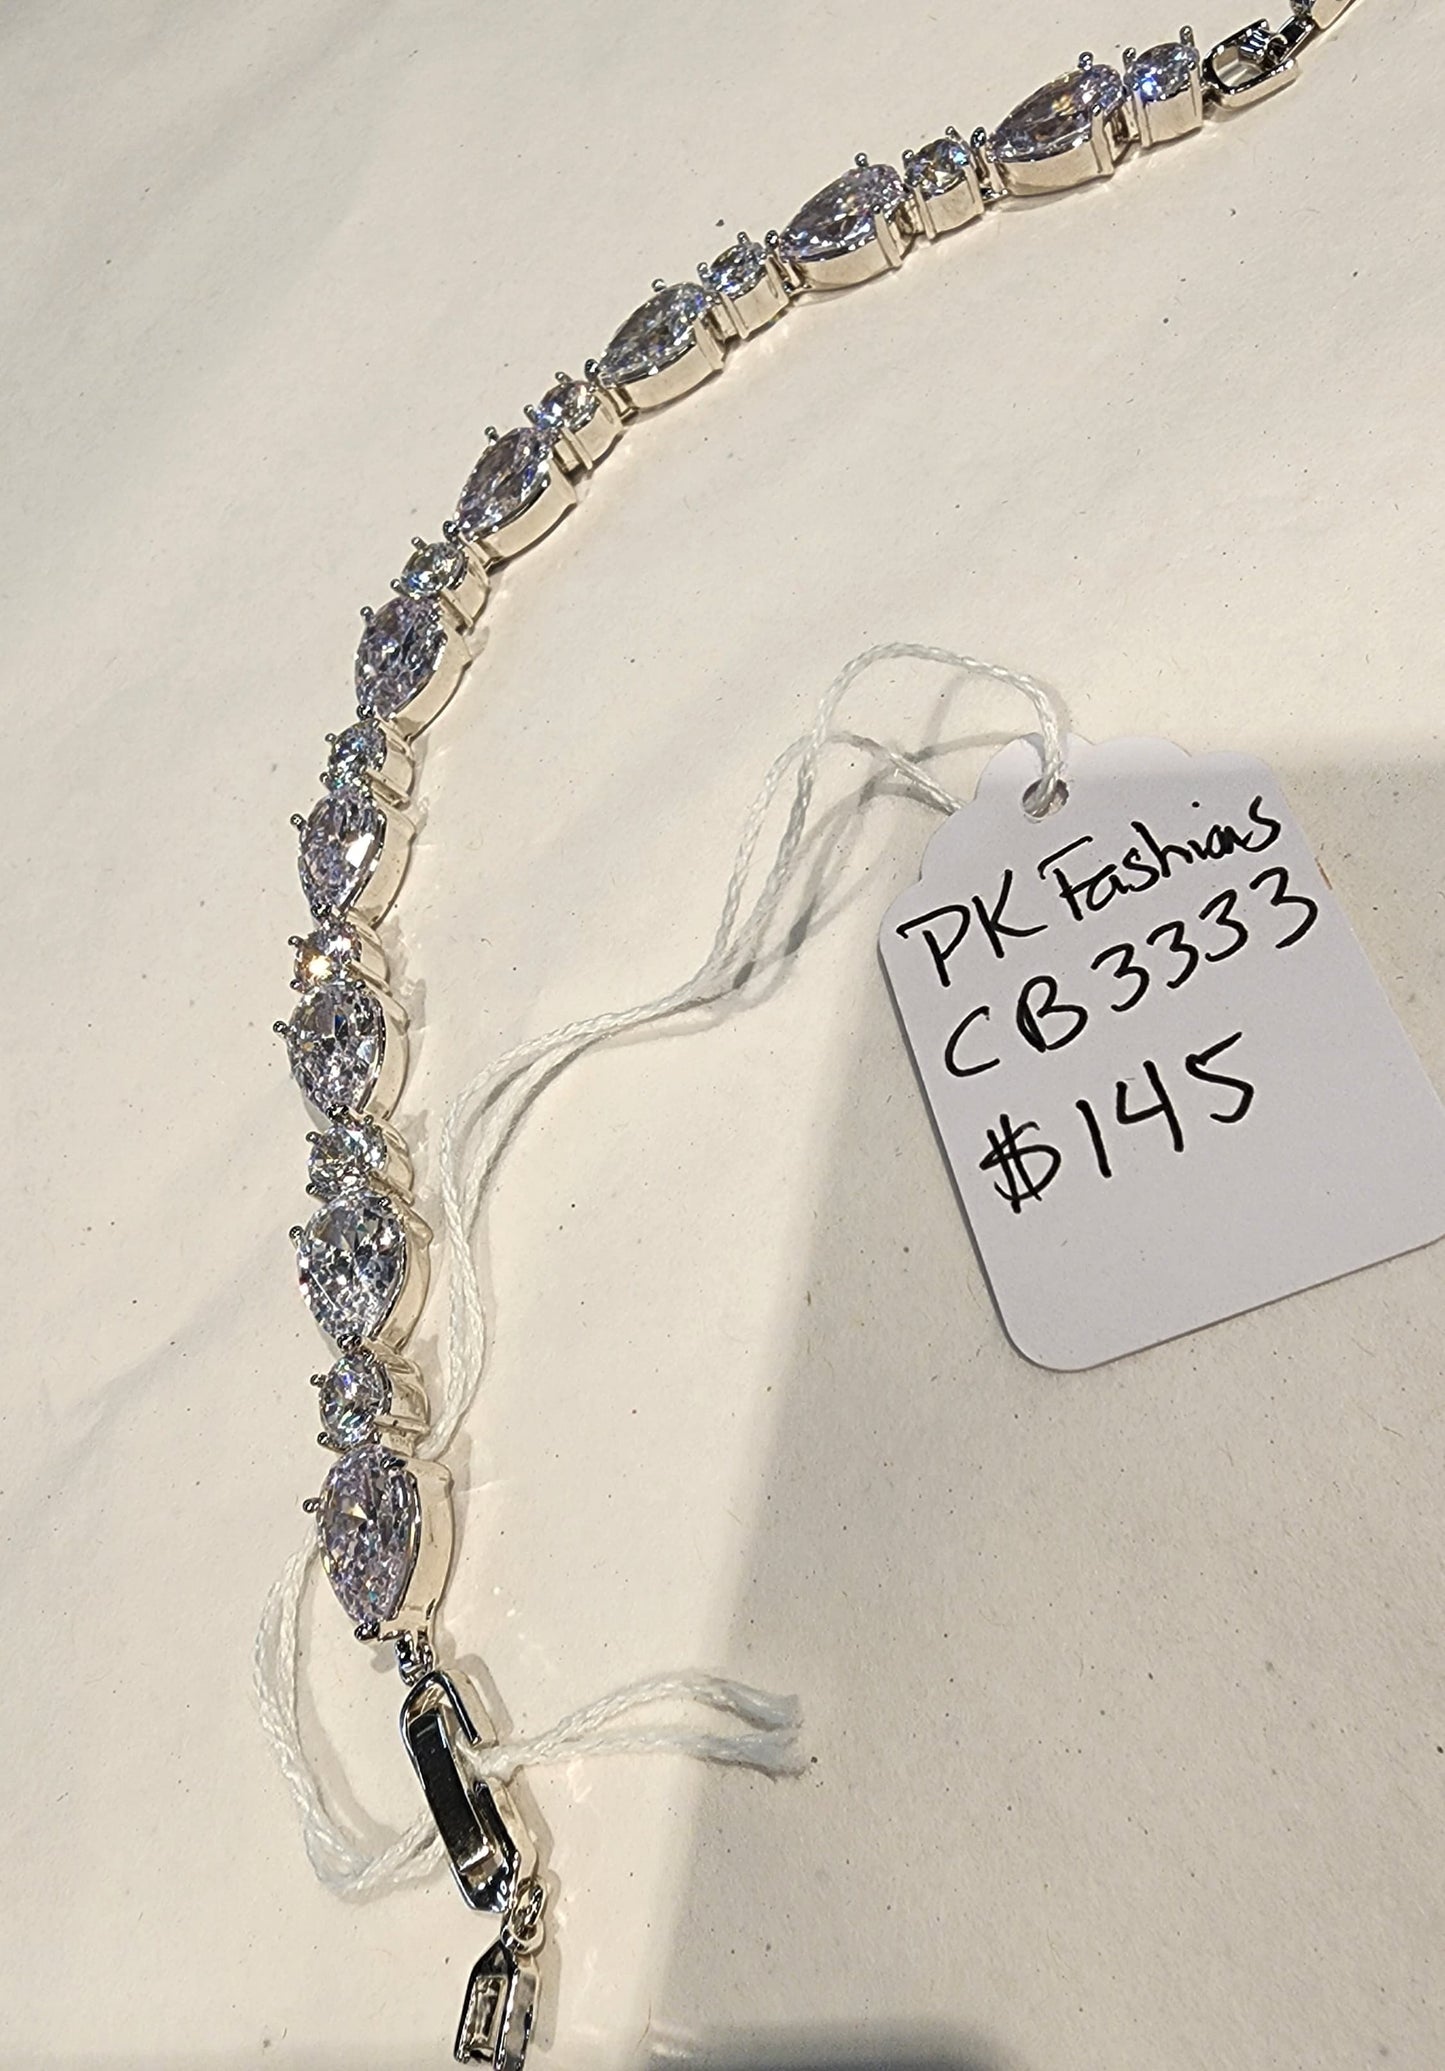 Rhinestone Bracelet CB3333